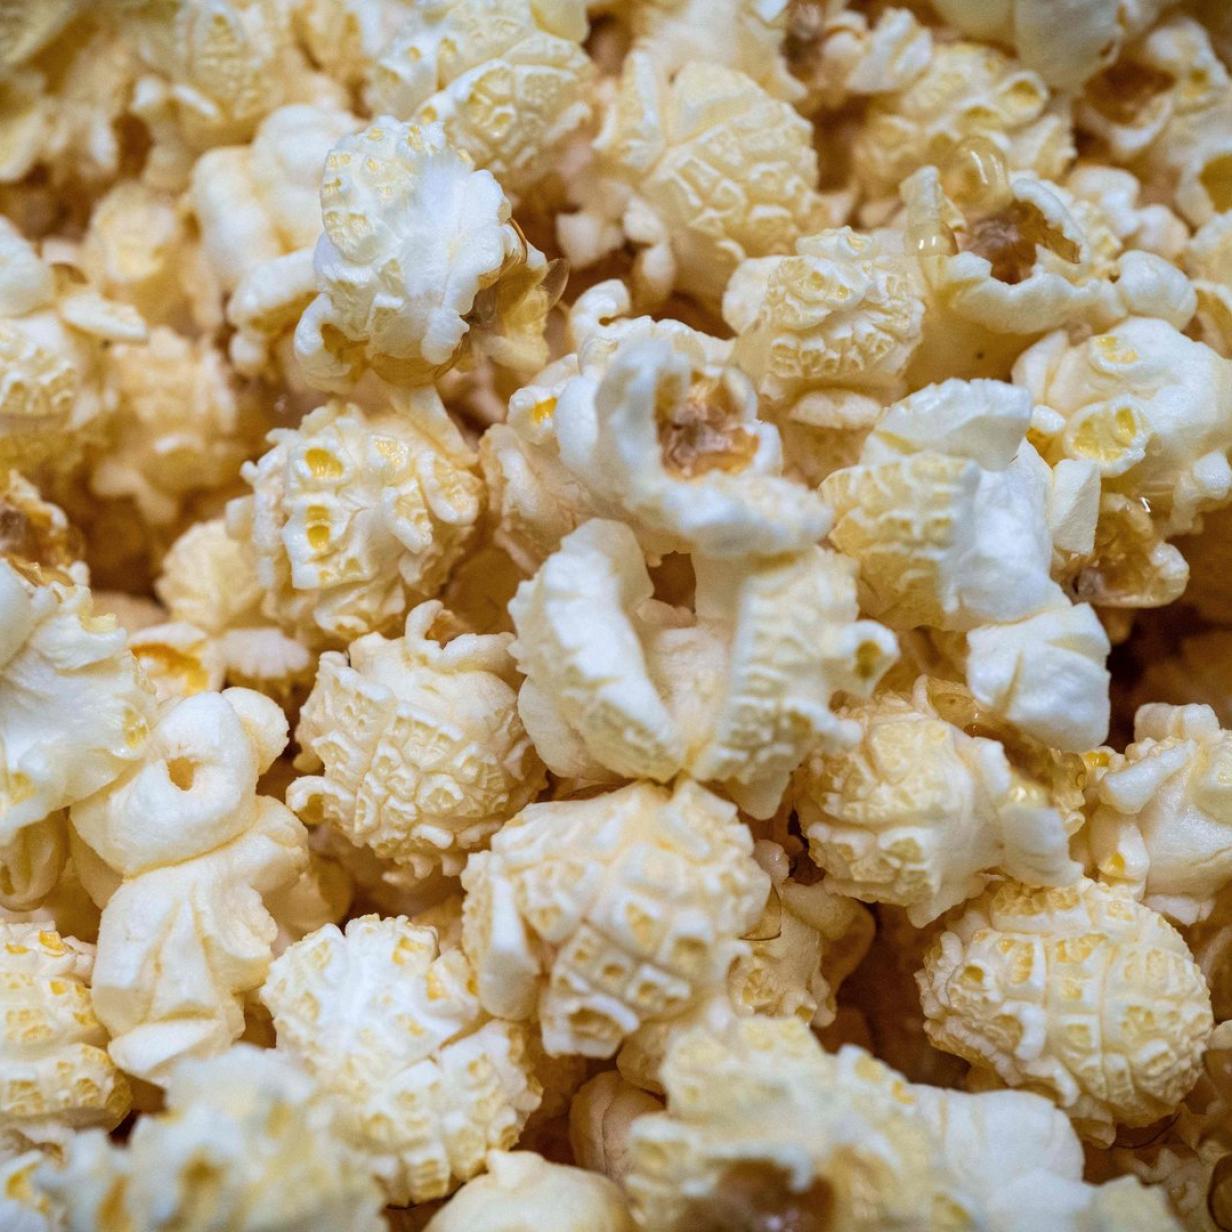 Zu viel Pestizid Lidl bei Mehrere Produkte im zurückgerufen Popcorn